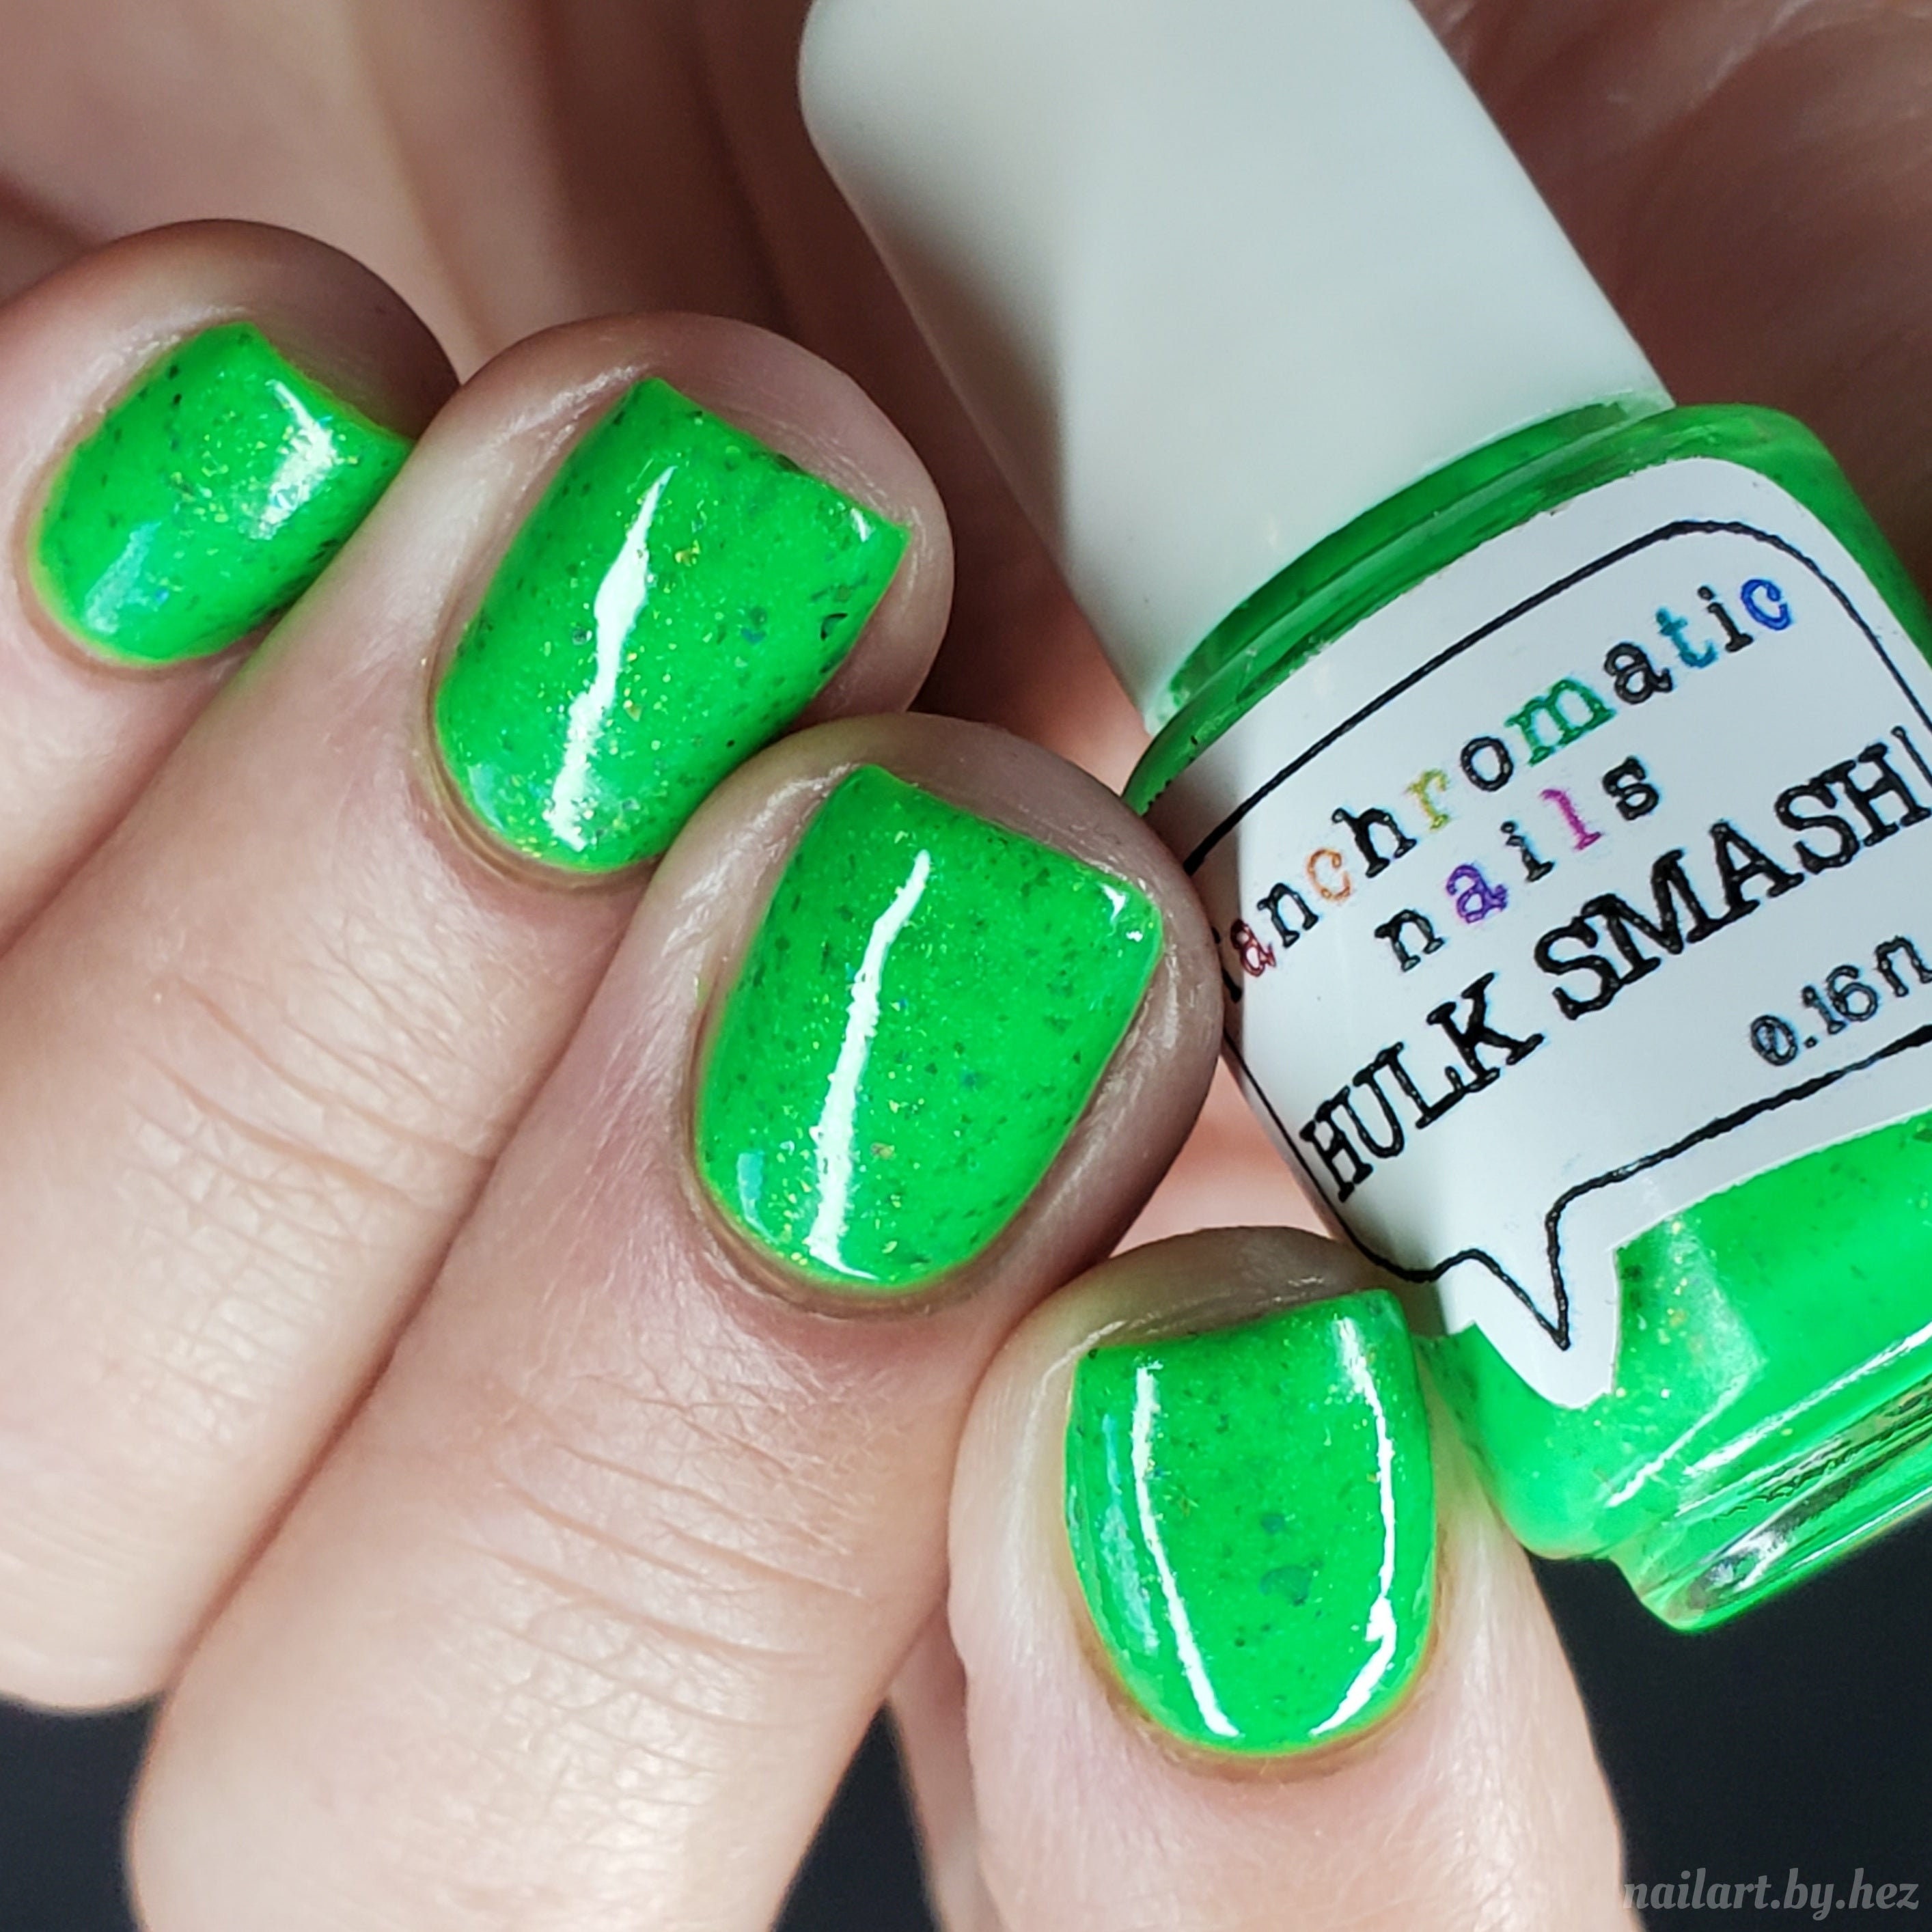 Hulk nails | Nails, Nail art, Cute nails